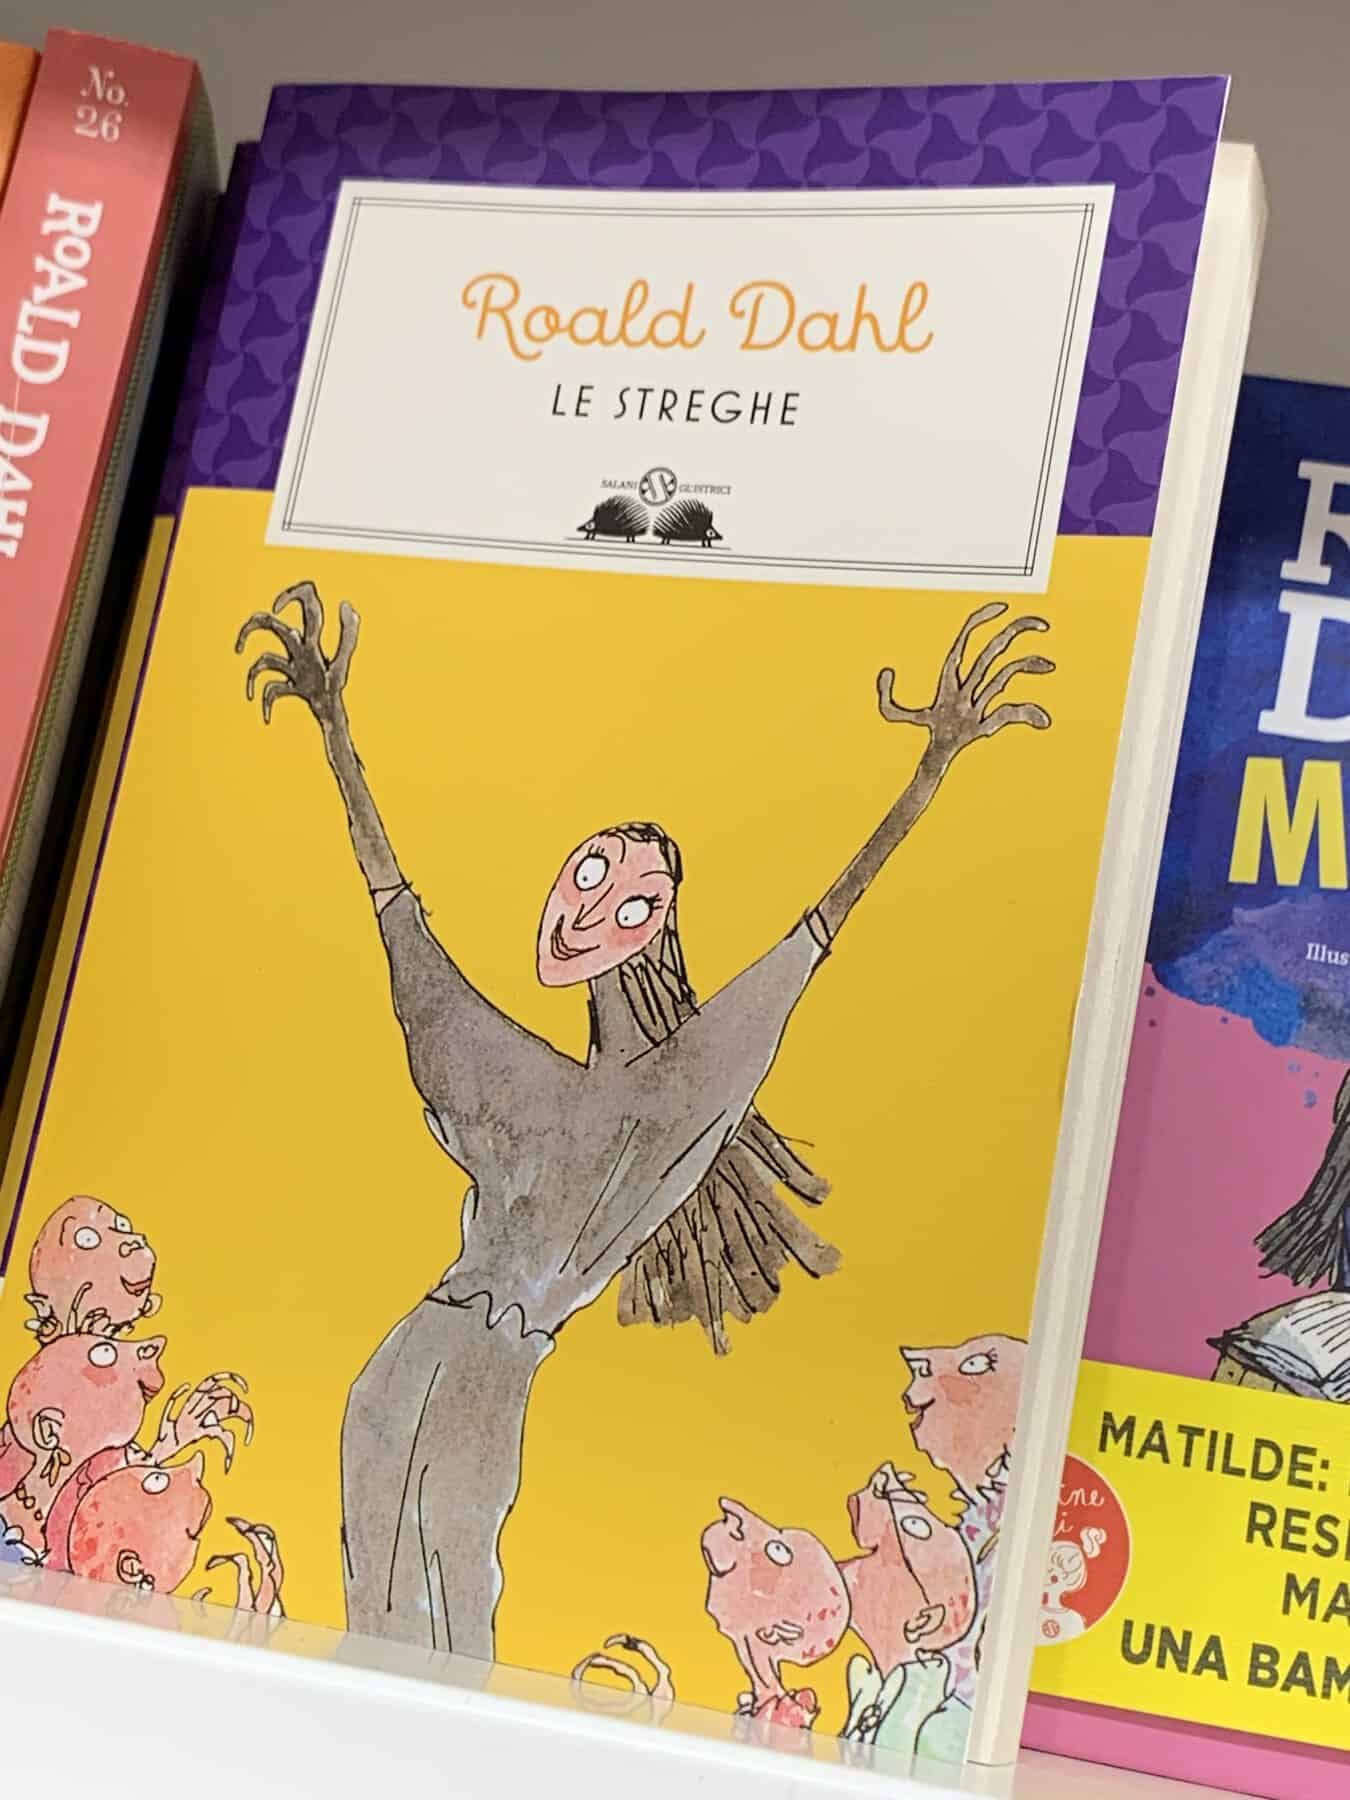 Roald Dahl: oggi è il compleanno del famoso scrittore